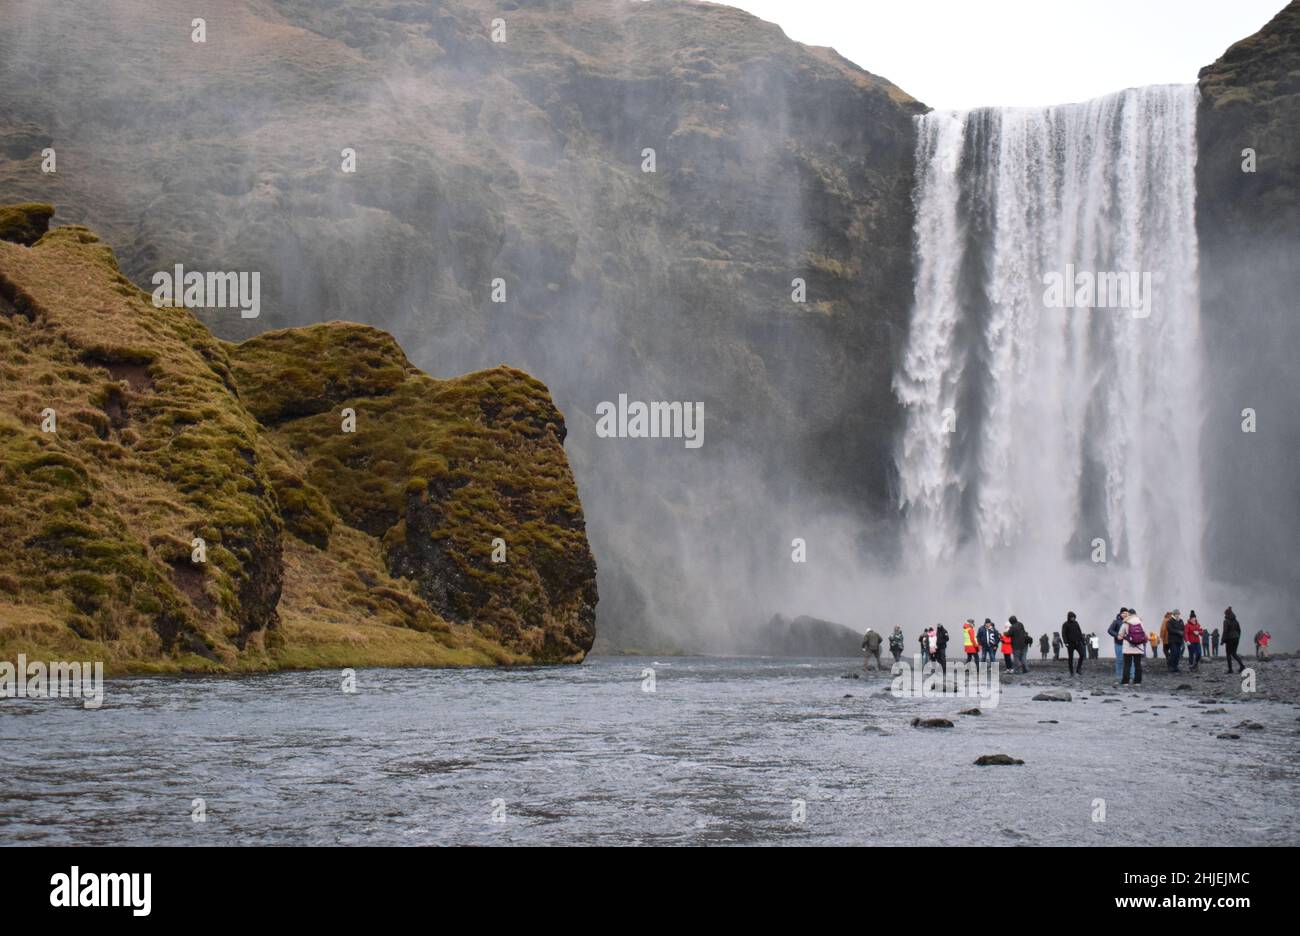 22 janvier Islande du Sud Un groupe de touristes visitant la célèbre cascade islandaise, Skogafoss.les gens sont éclipsés par l'énorme cascade derrière eux Banque D'Images